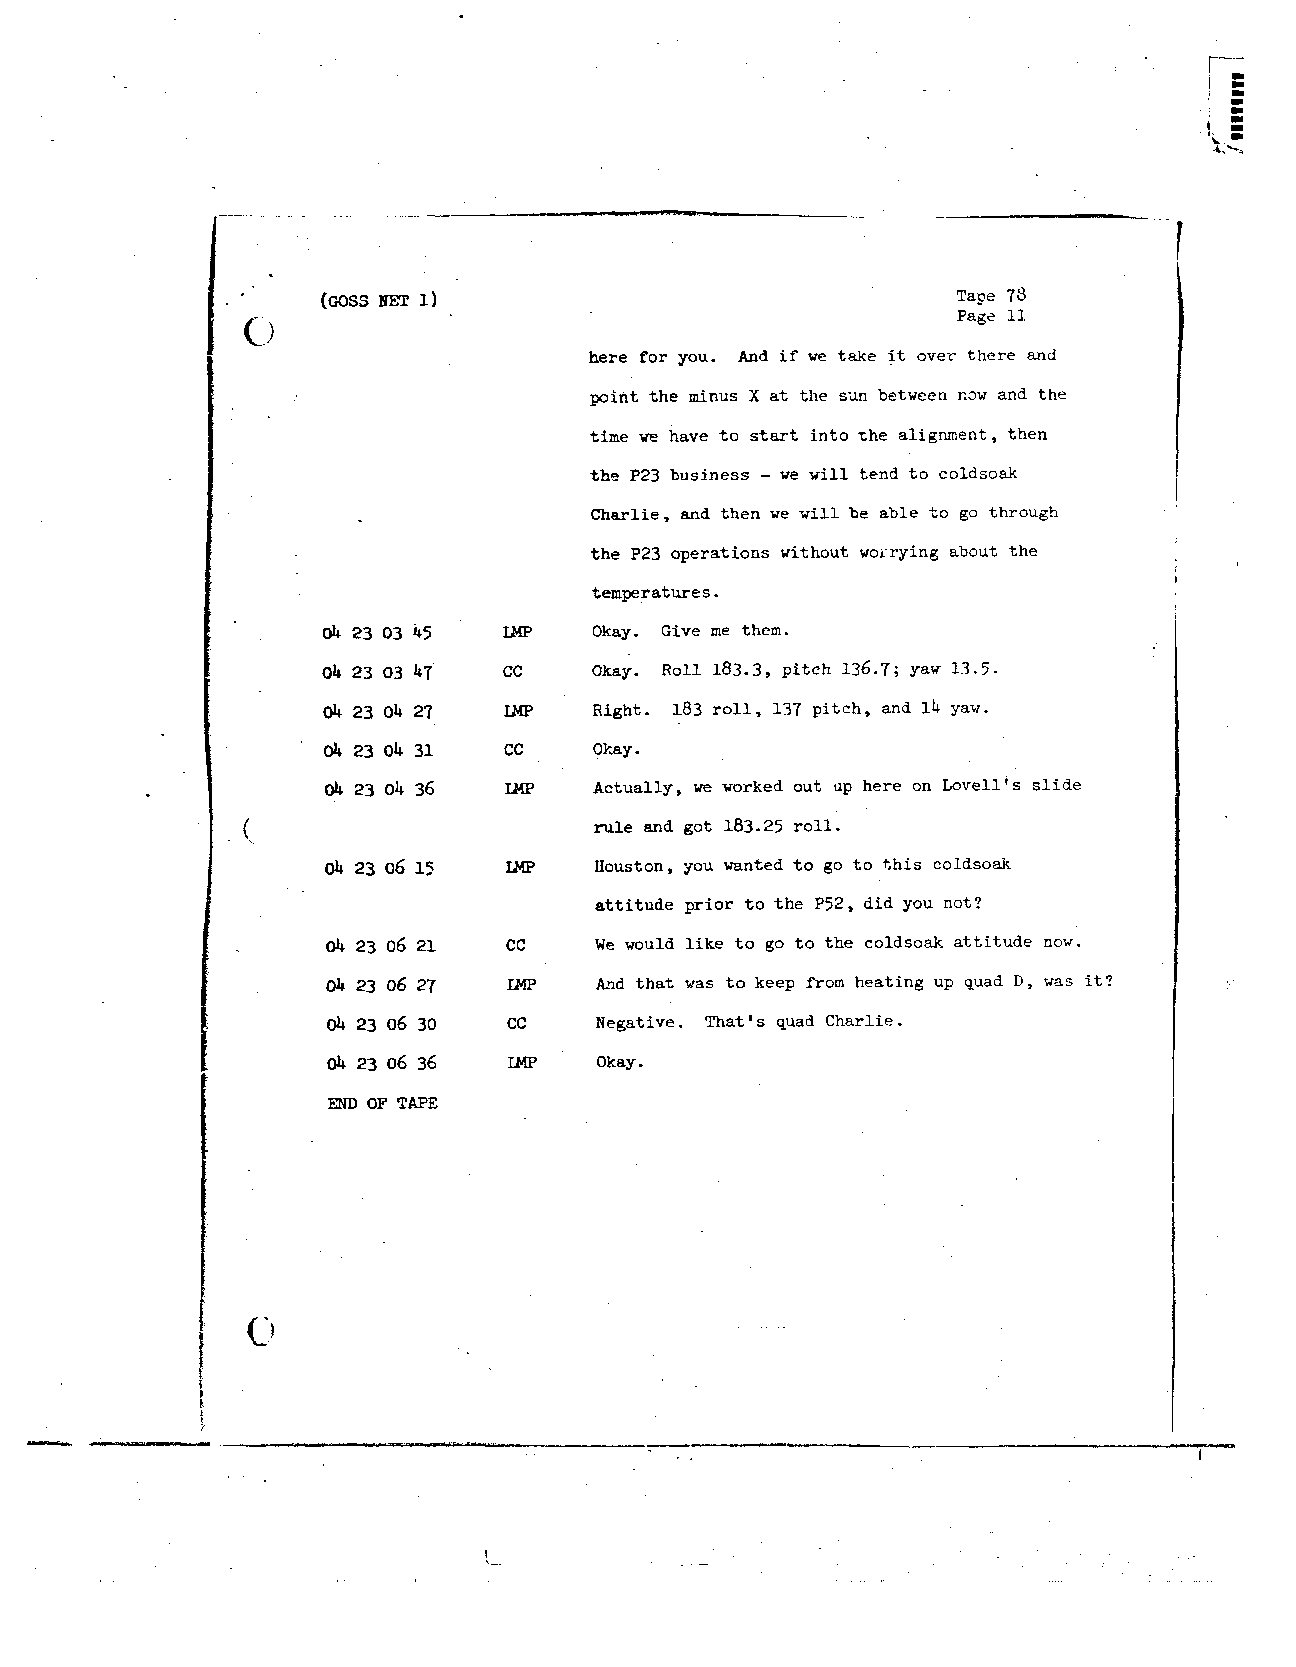 Page 651 of Apollo 8’s original transcript